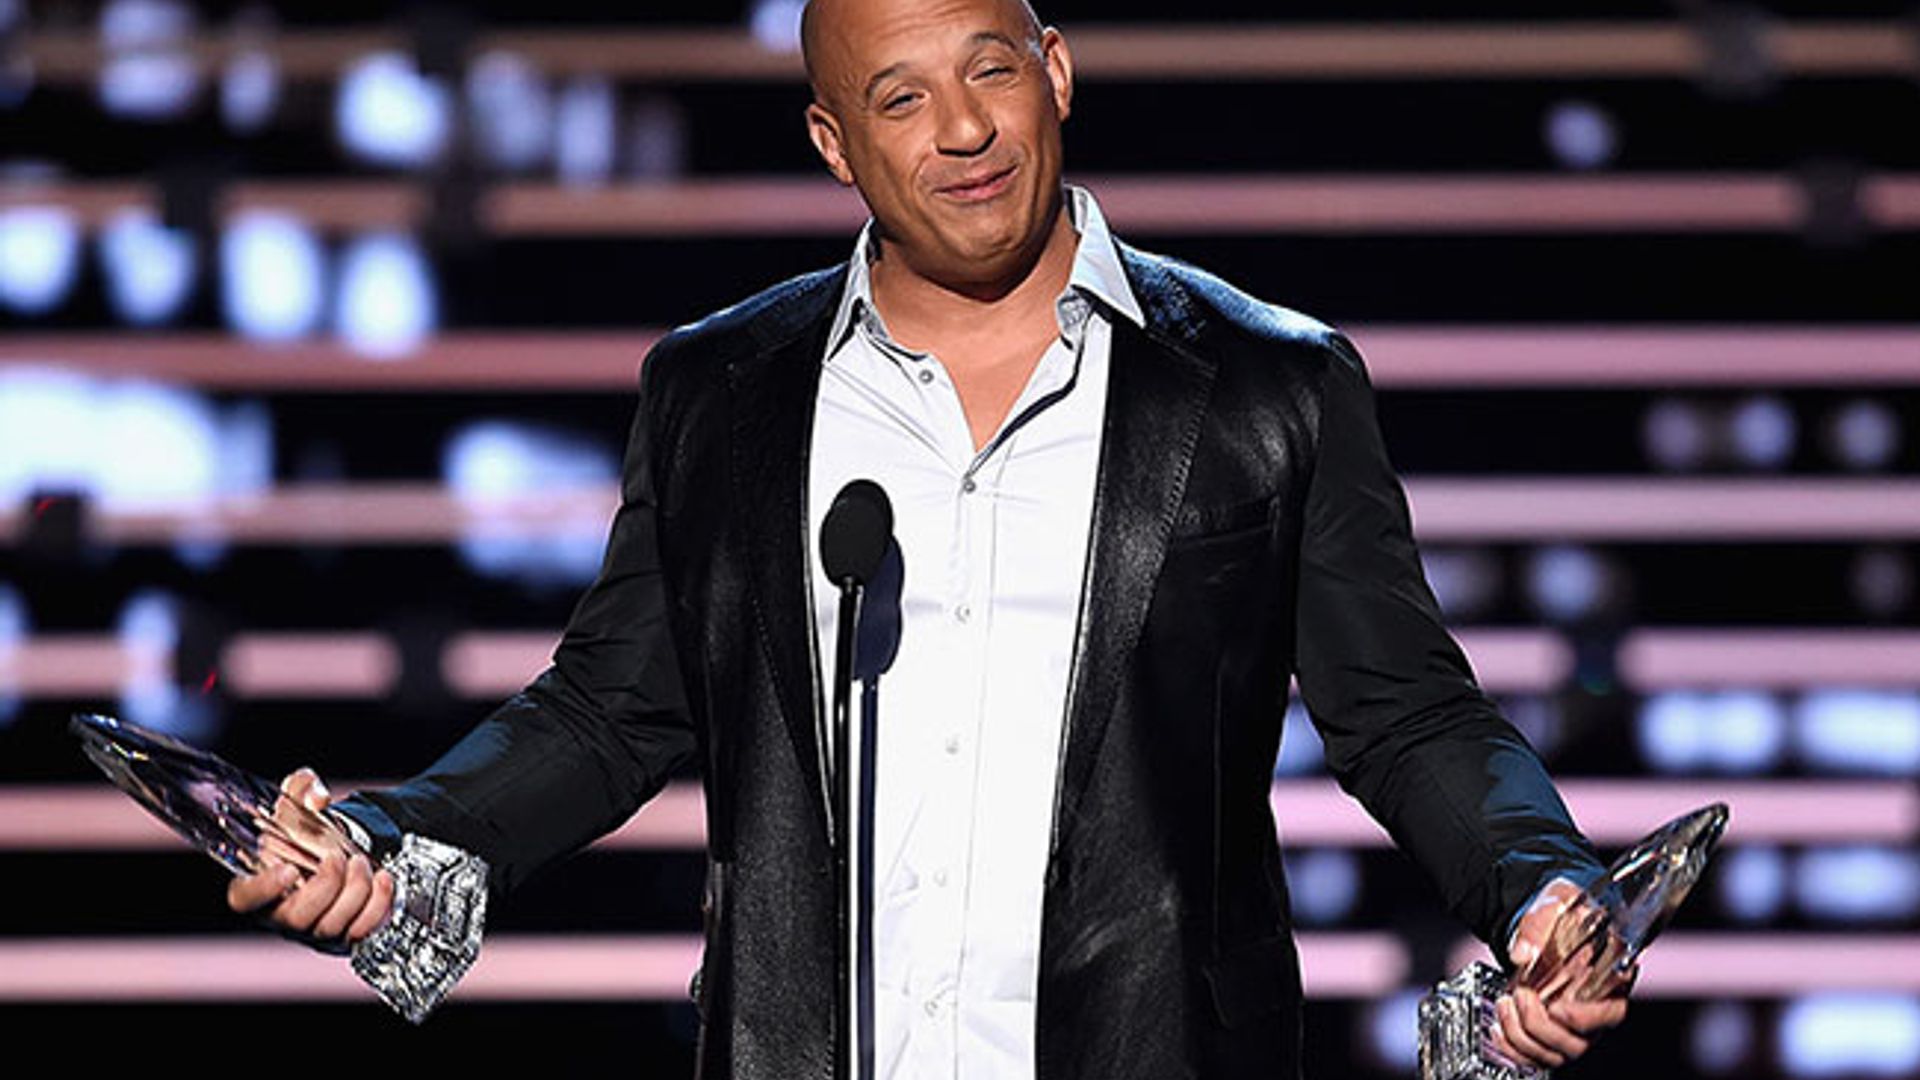 Watch: Vin Diesel sings emotional tribute to Paul Walker